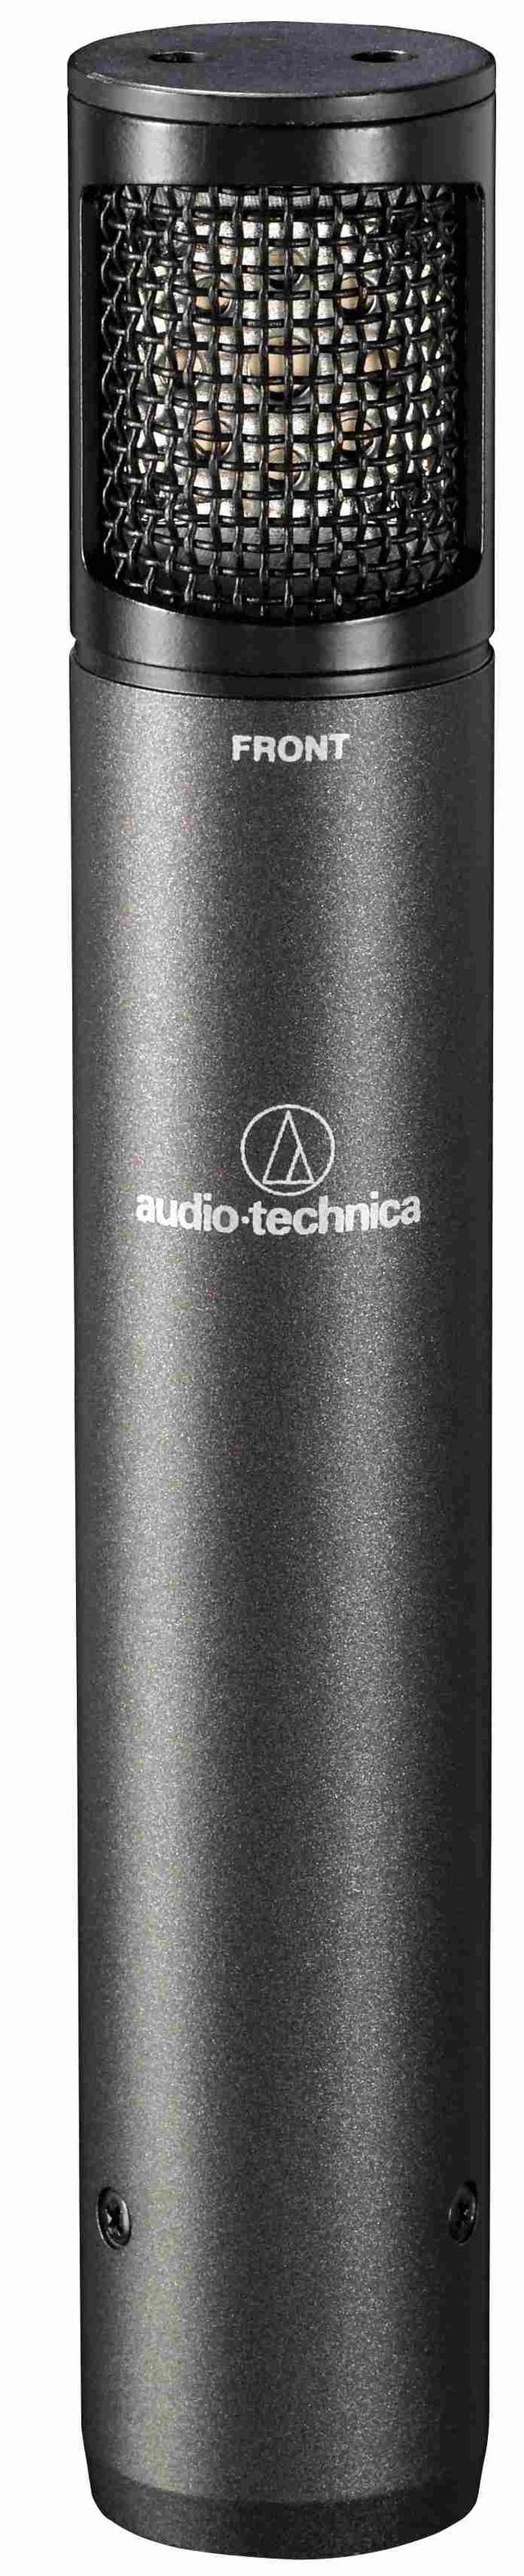 Audio-Technica Drum Mic Pack 4